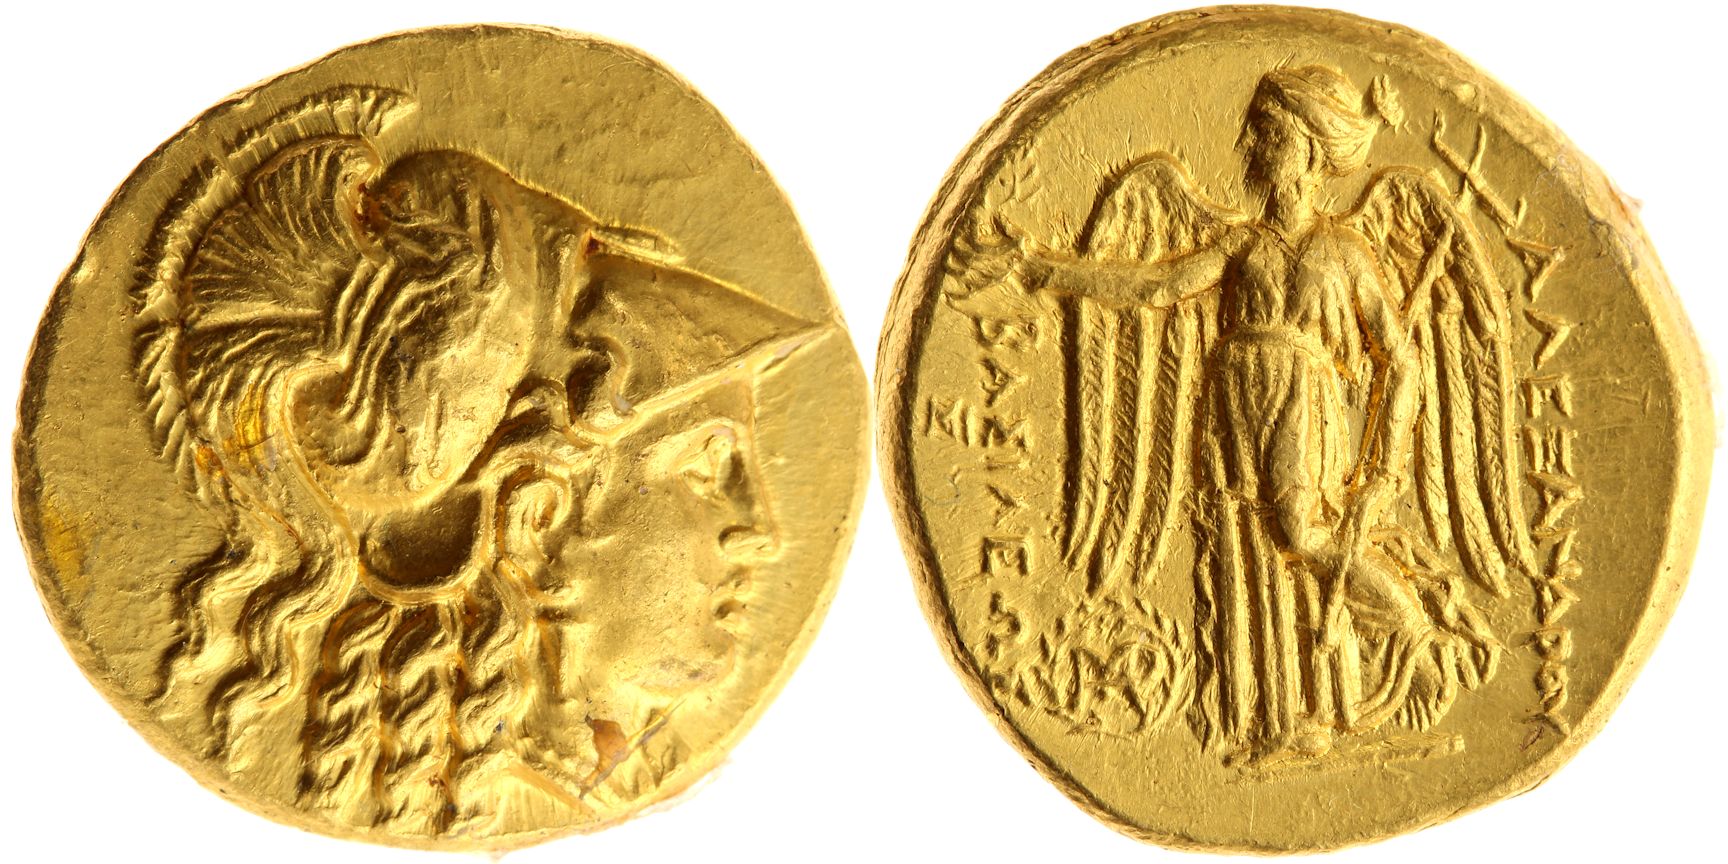 A gold stater of Seleucus ©Bundesbank